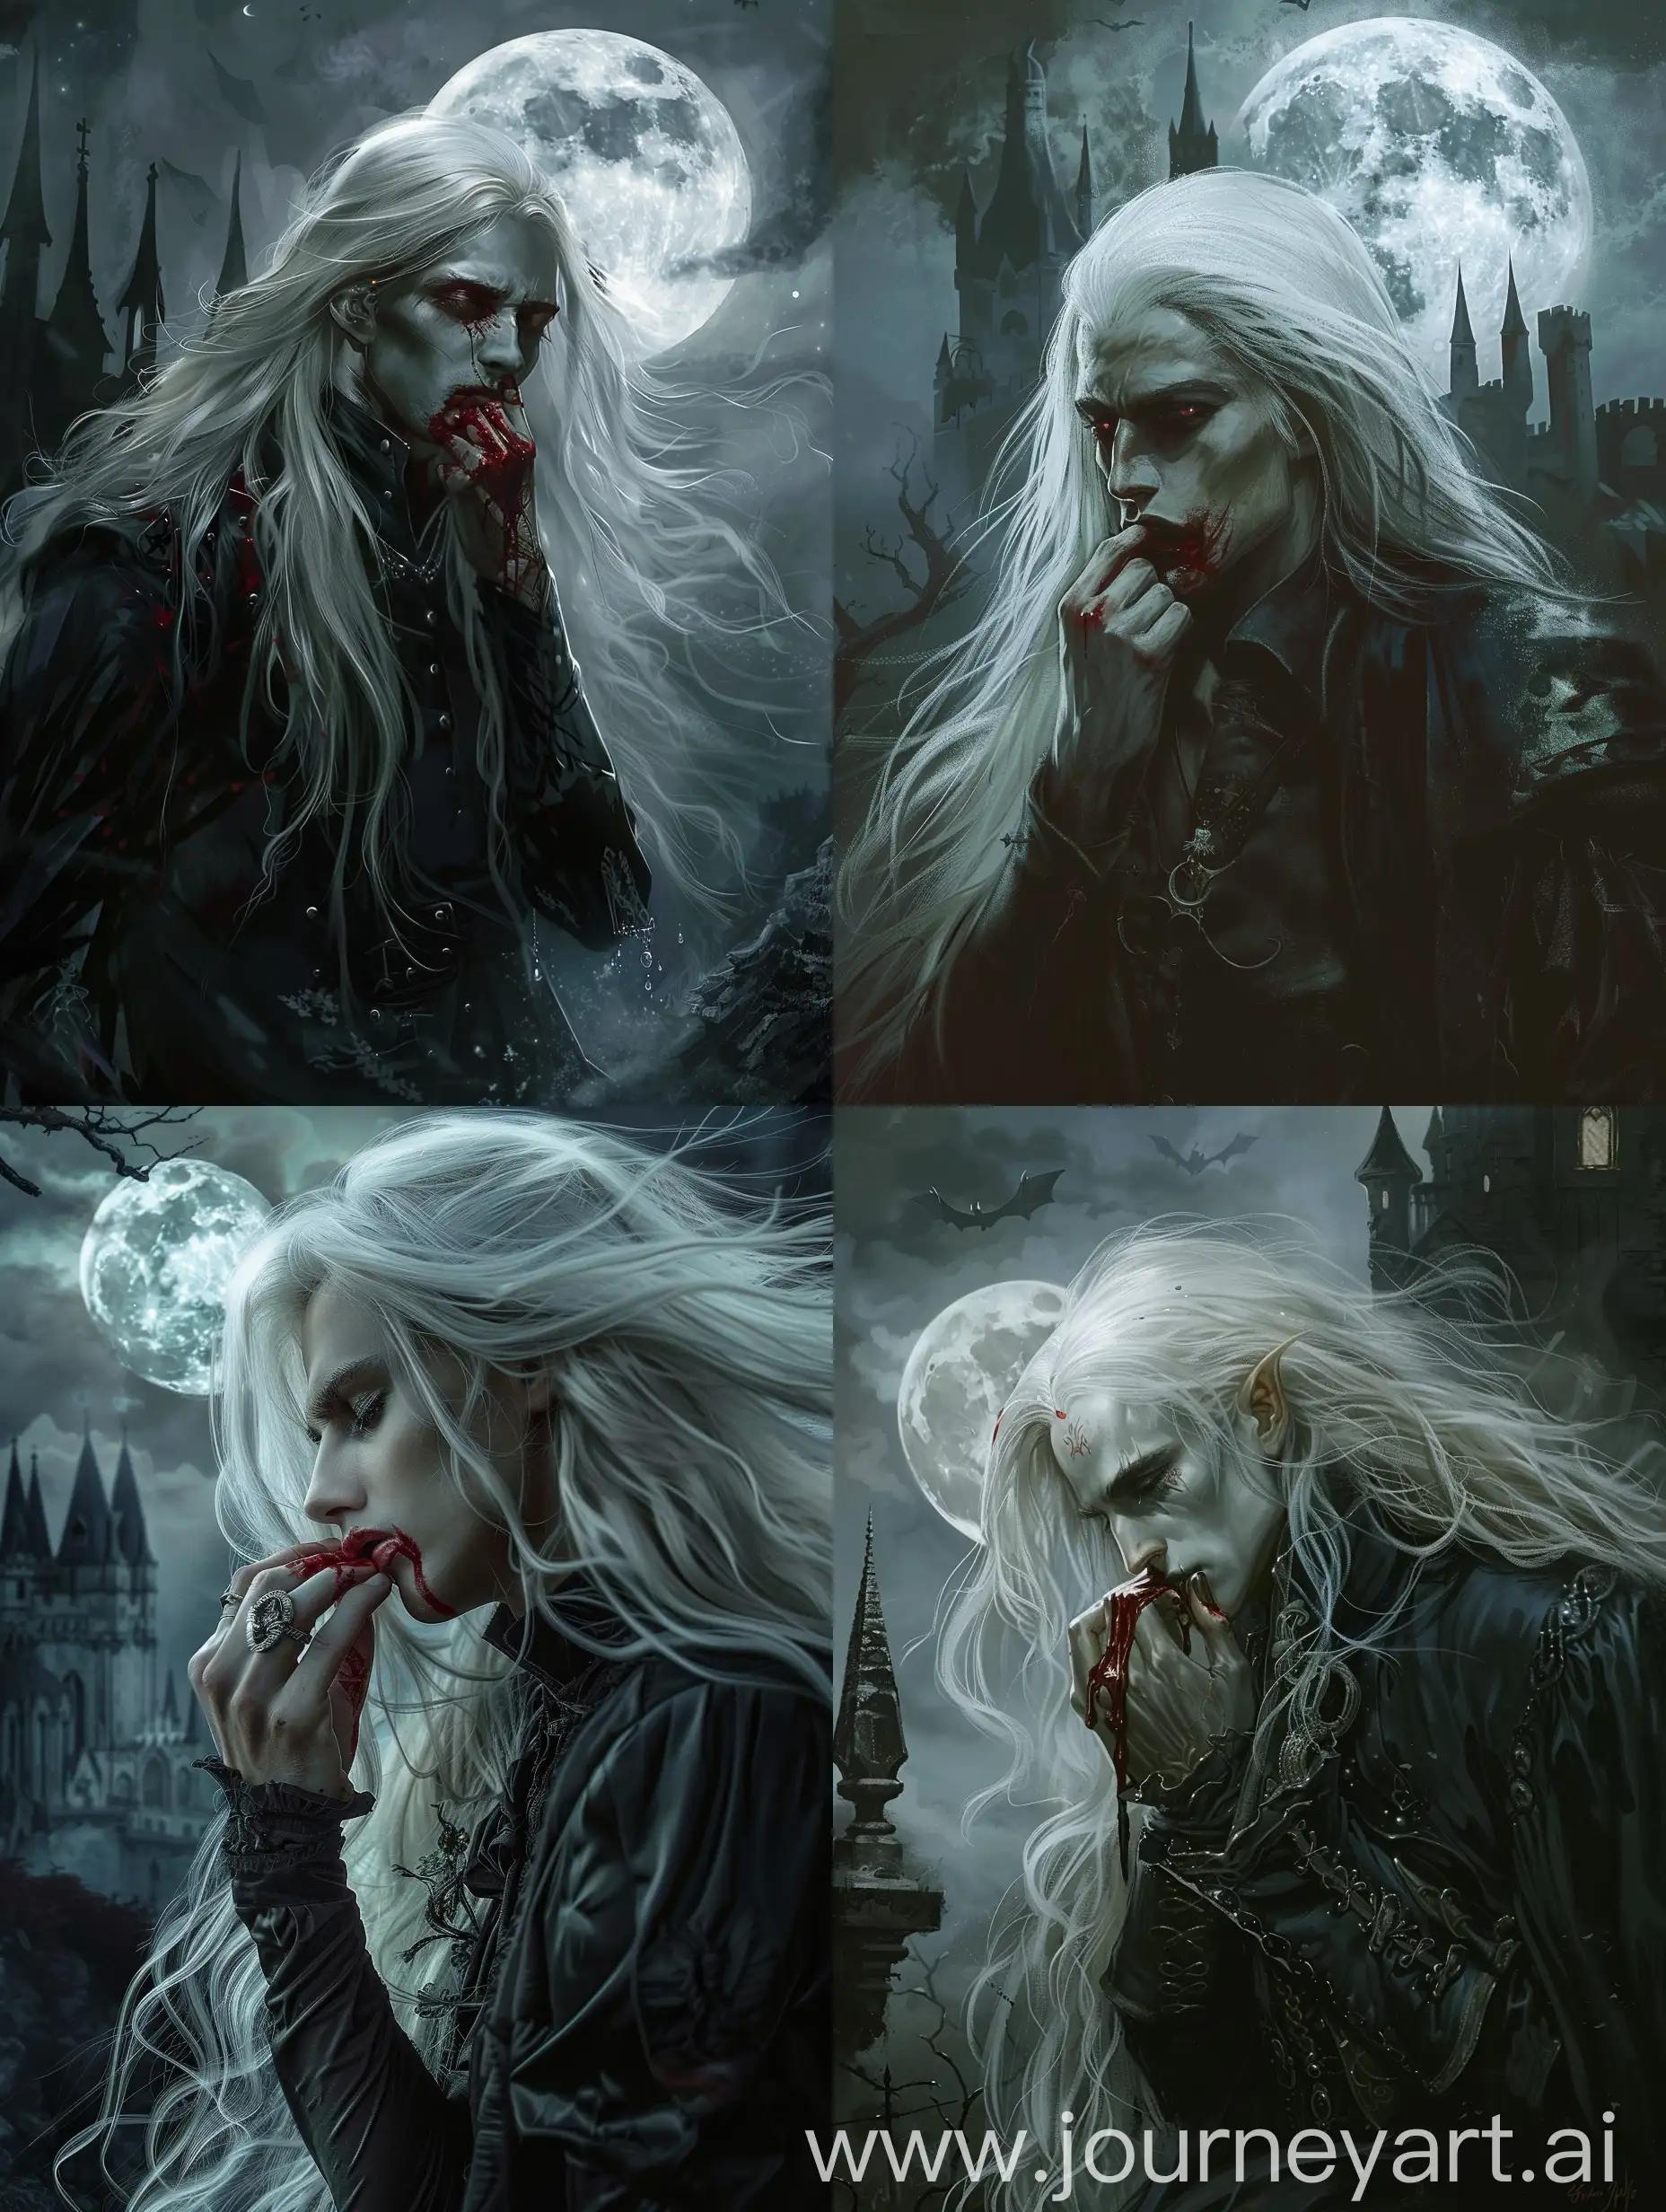 Elegant-Vampire-Man-with-Long-White-Hair-in-Moonlit-Castle-Scene